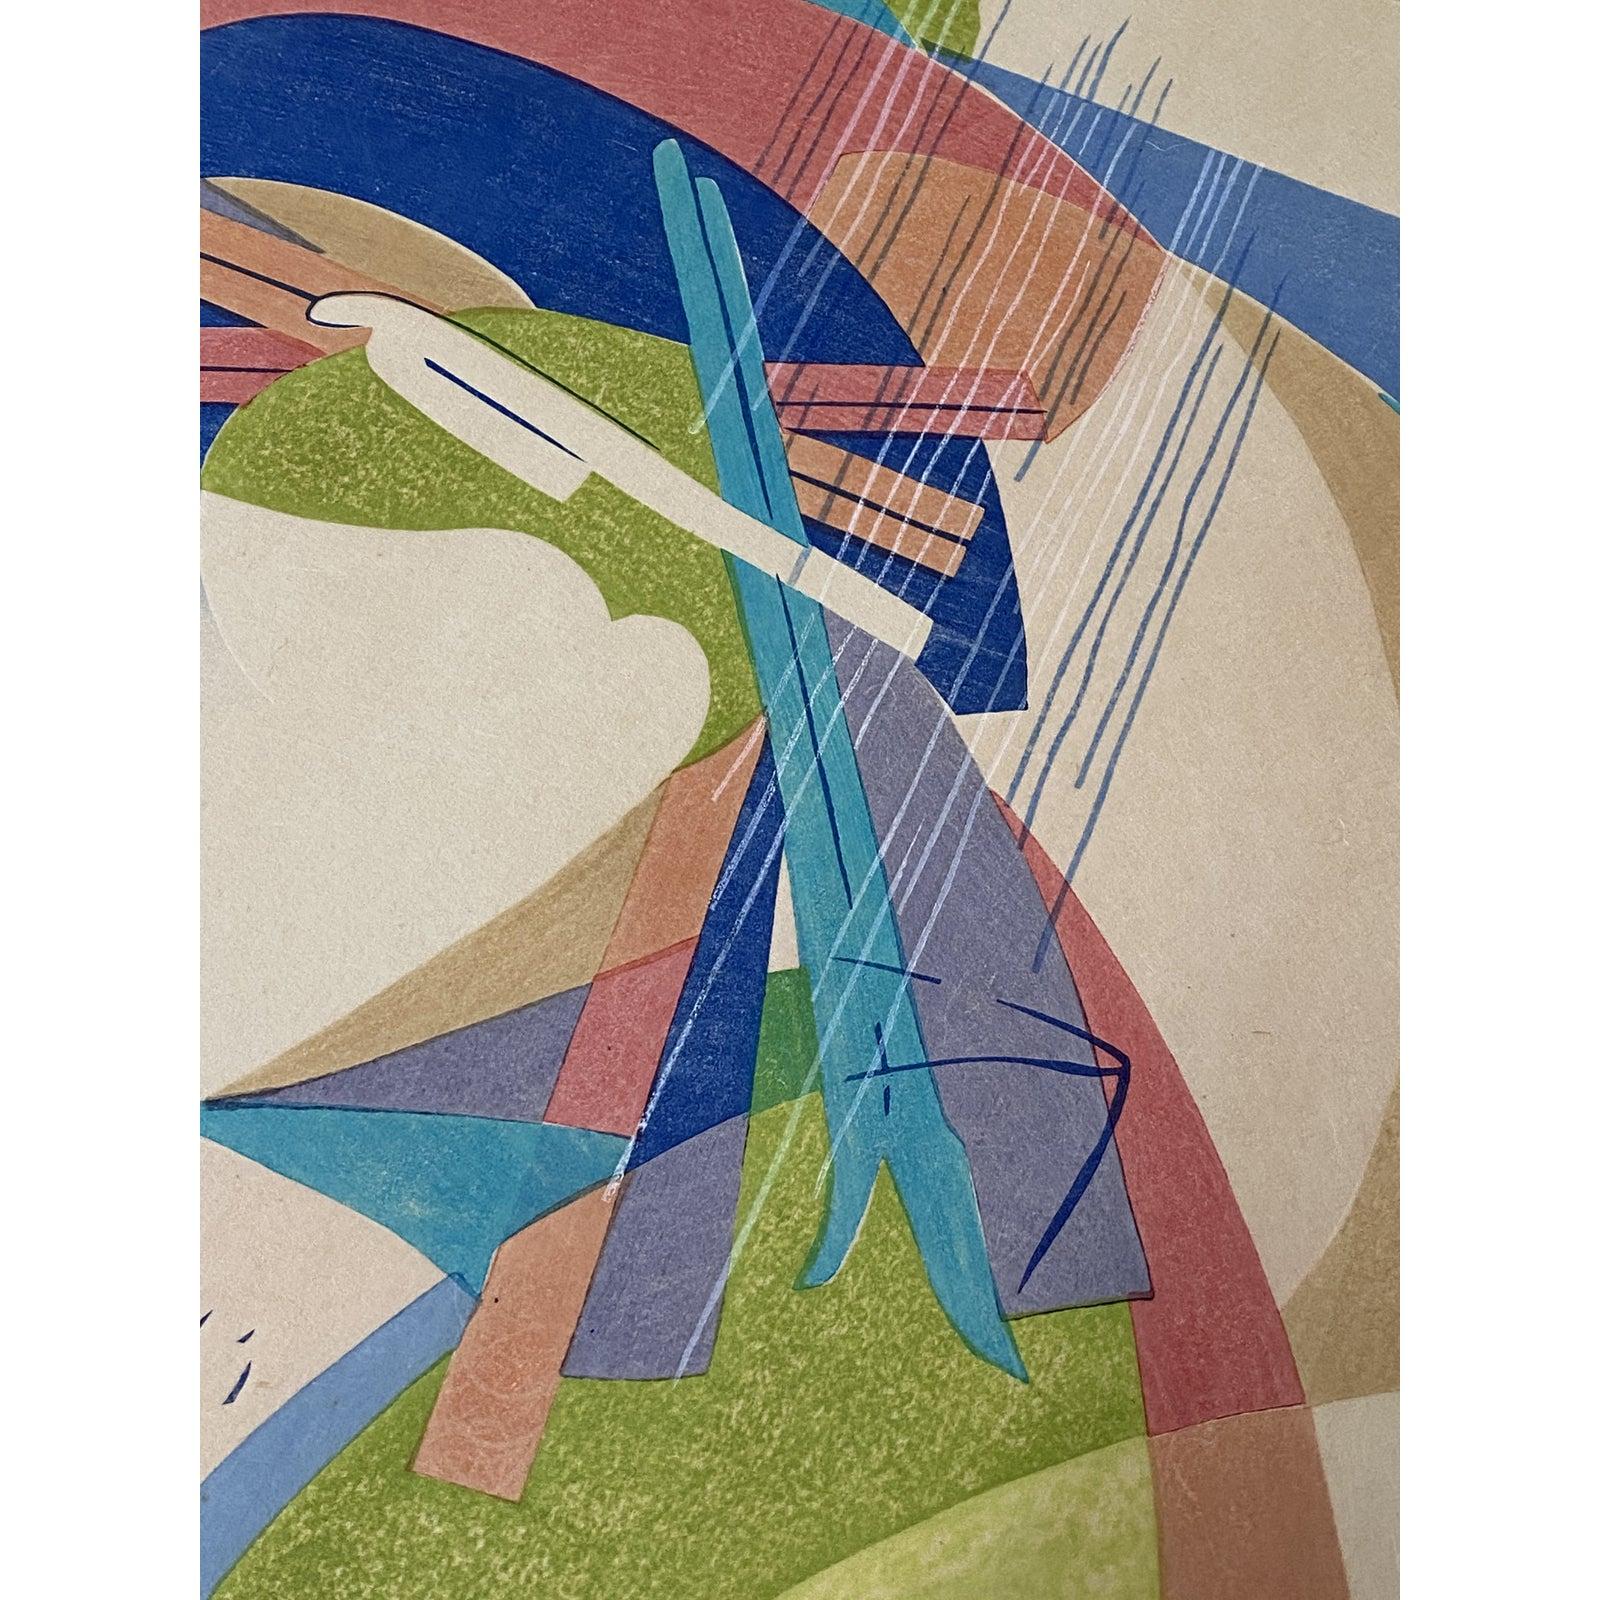 Stanton Macdonald-Wright

Holzschnitt auf Büttenpapier 1966-67

Abreisender Frühling zögert

Scheint ein Künstlerabzug zu sein. Der Bleistifttext und die Signatur sind verblasst.

Abmessungen 18